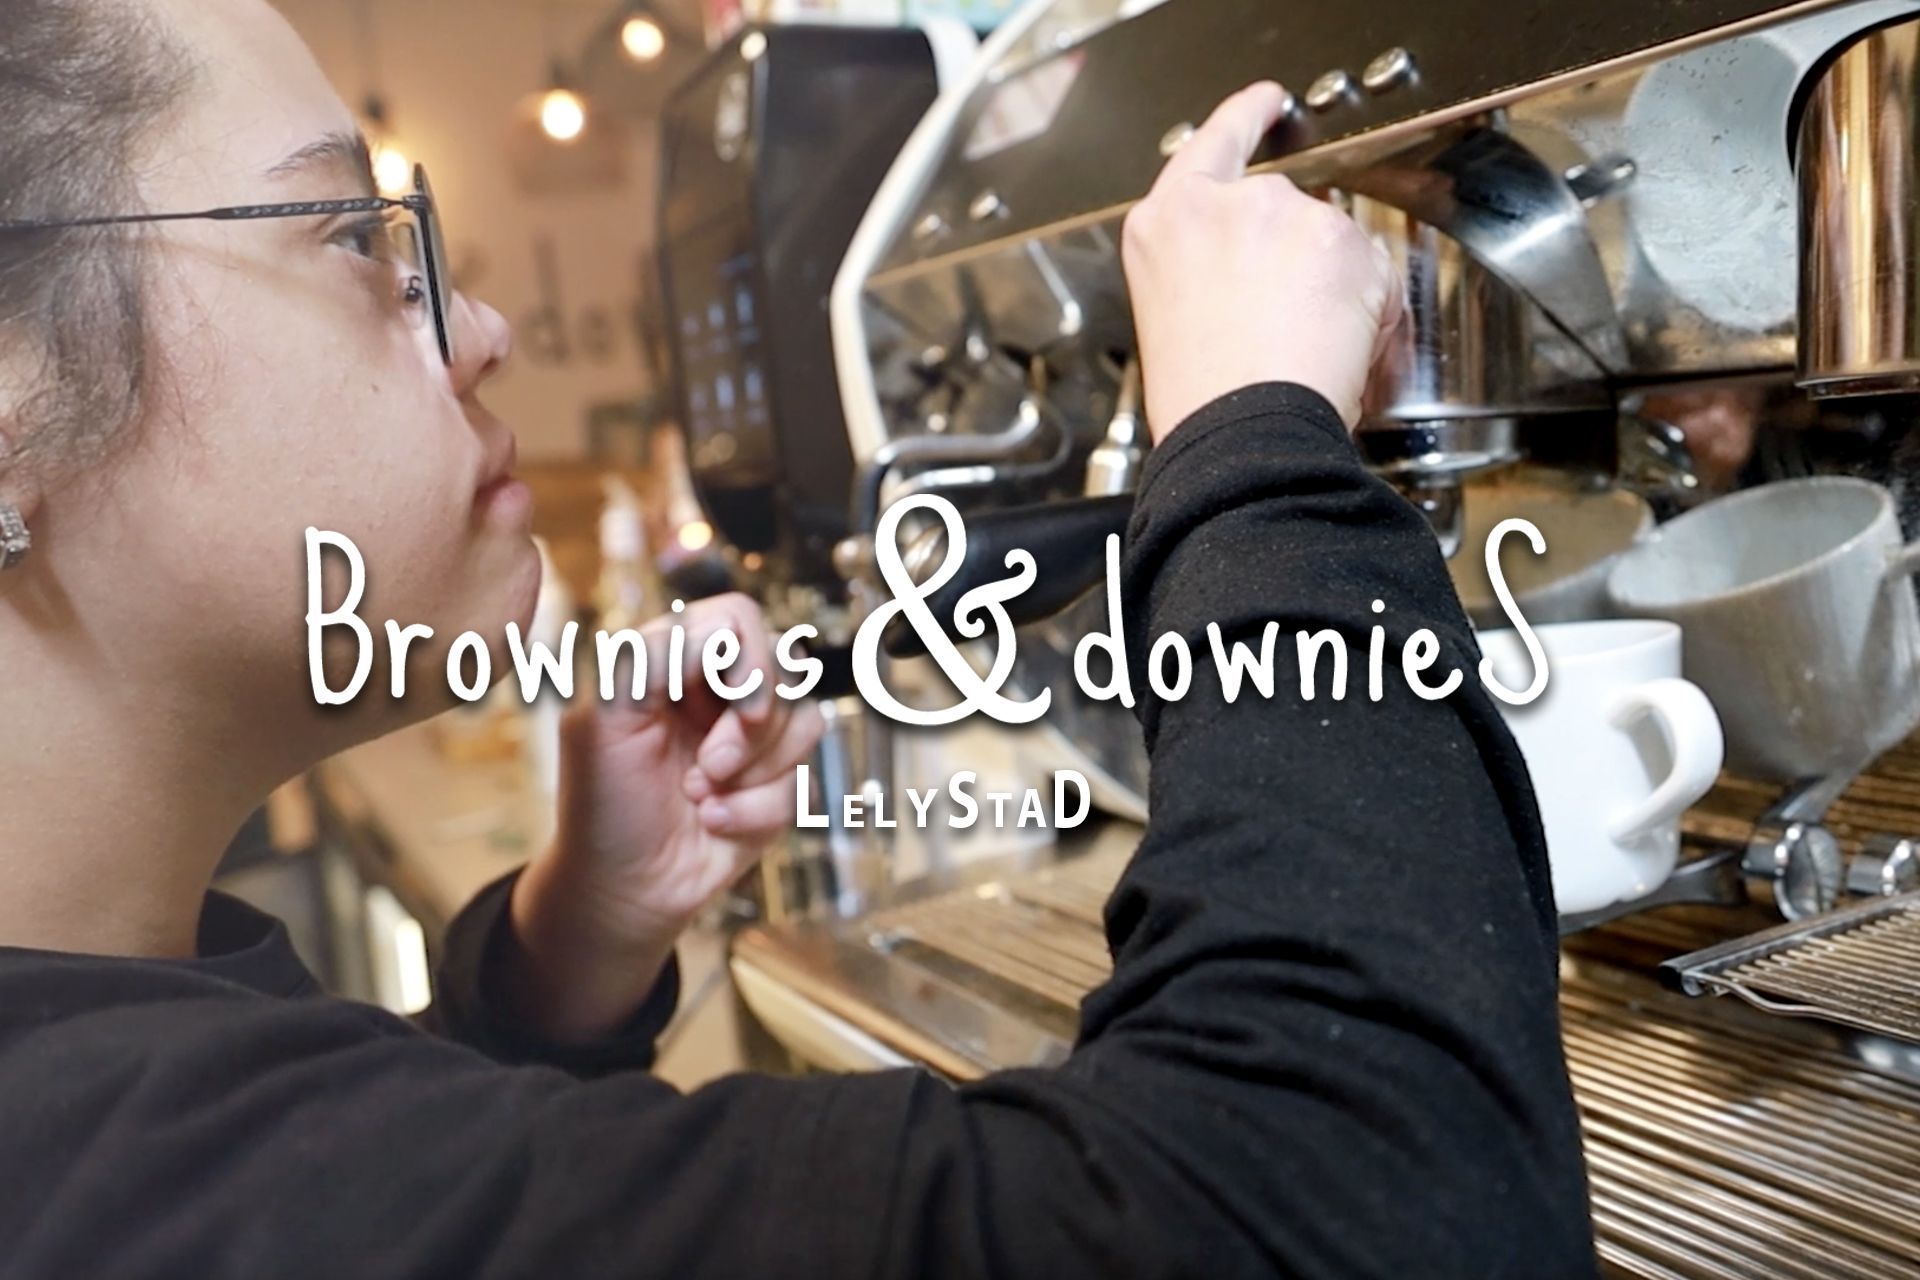 Brownies & Downies Lelystad bestaat 5 jaar. Braakhekke Creative mocht een feestelijke video maken voor deze gelegenheid